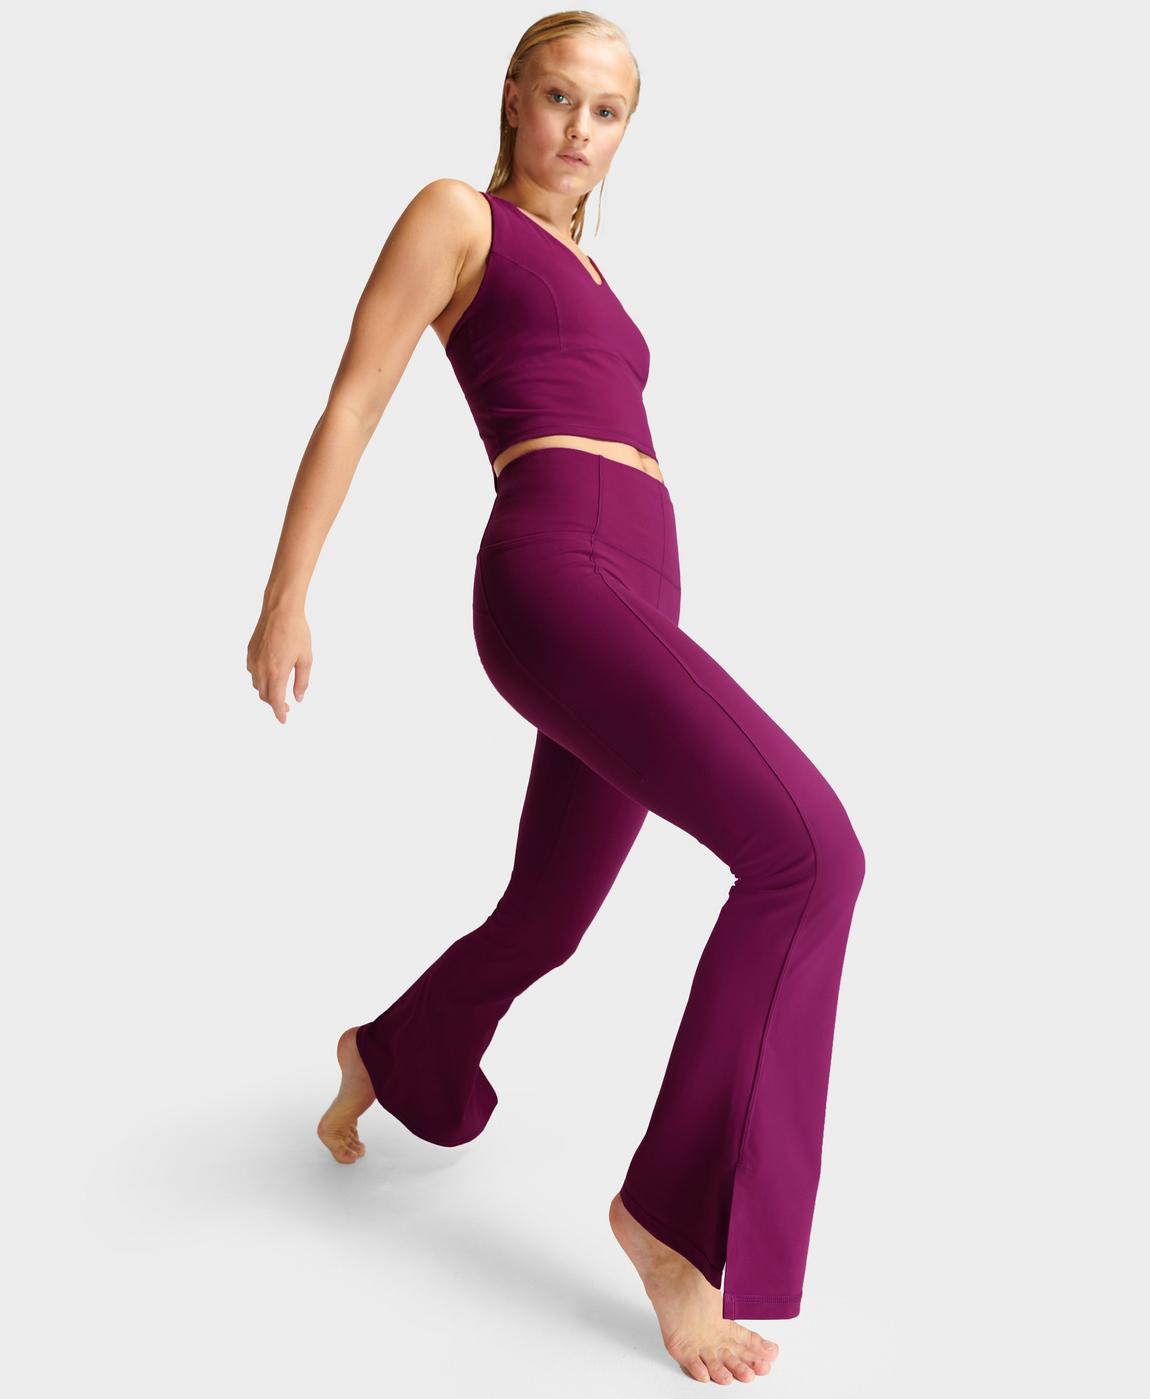 Super Soft Flare Yoga Pants - Amaranth Pink